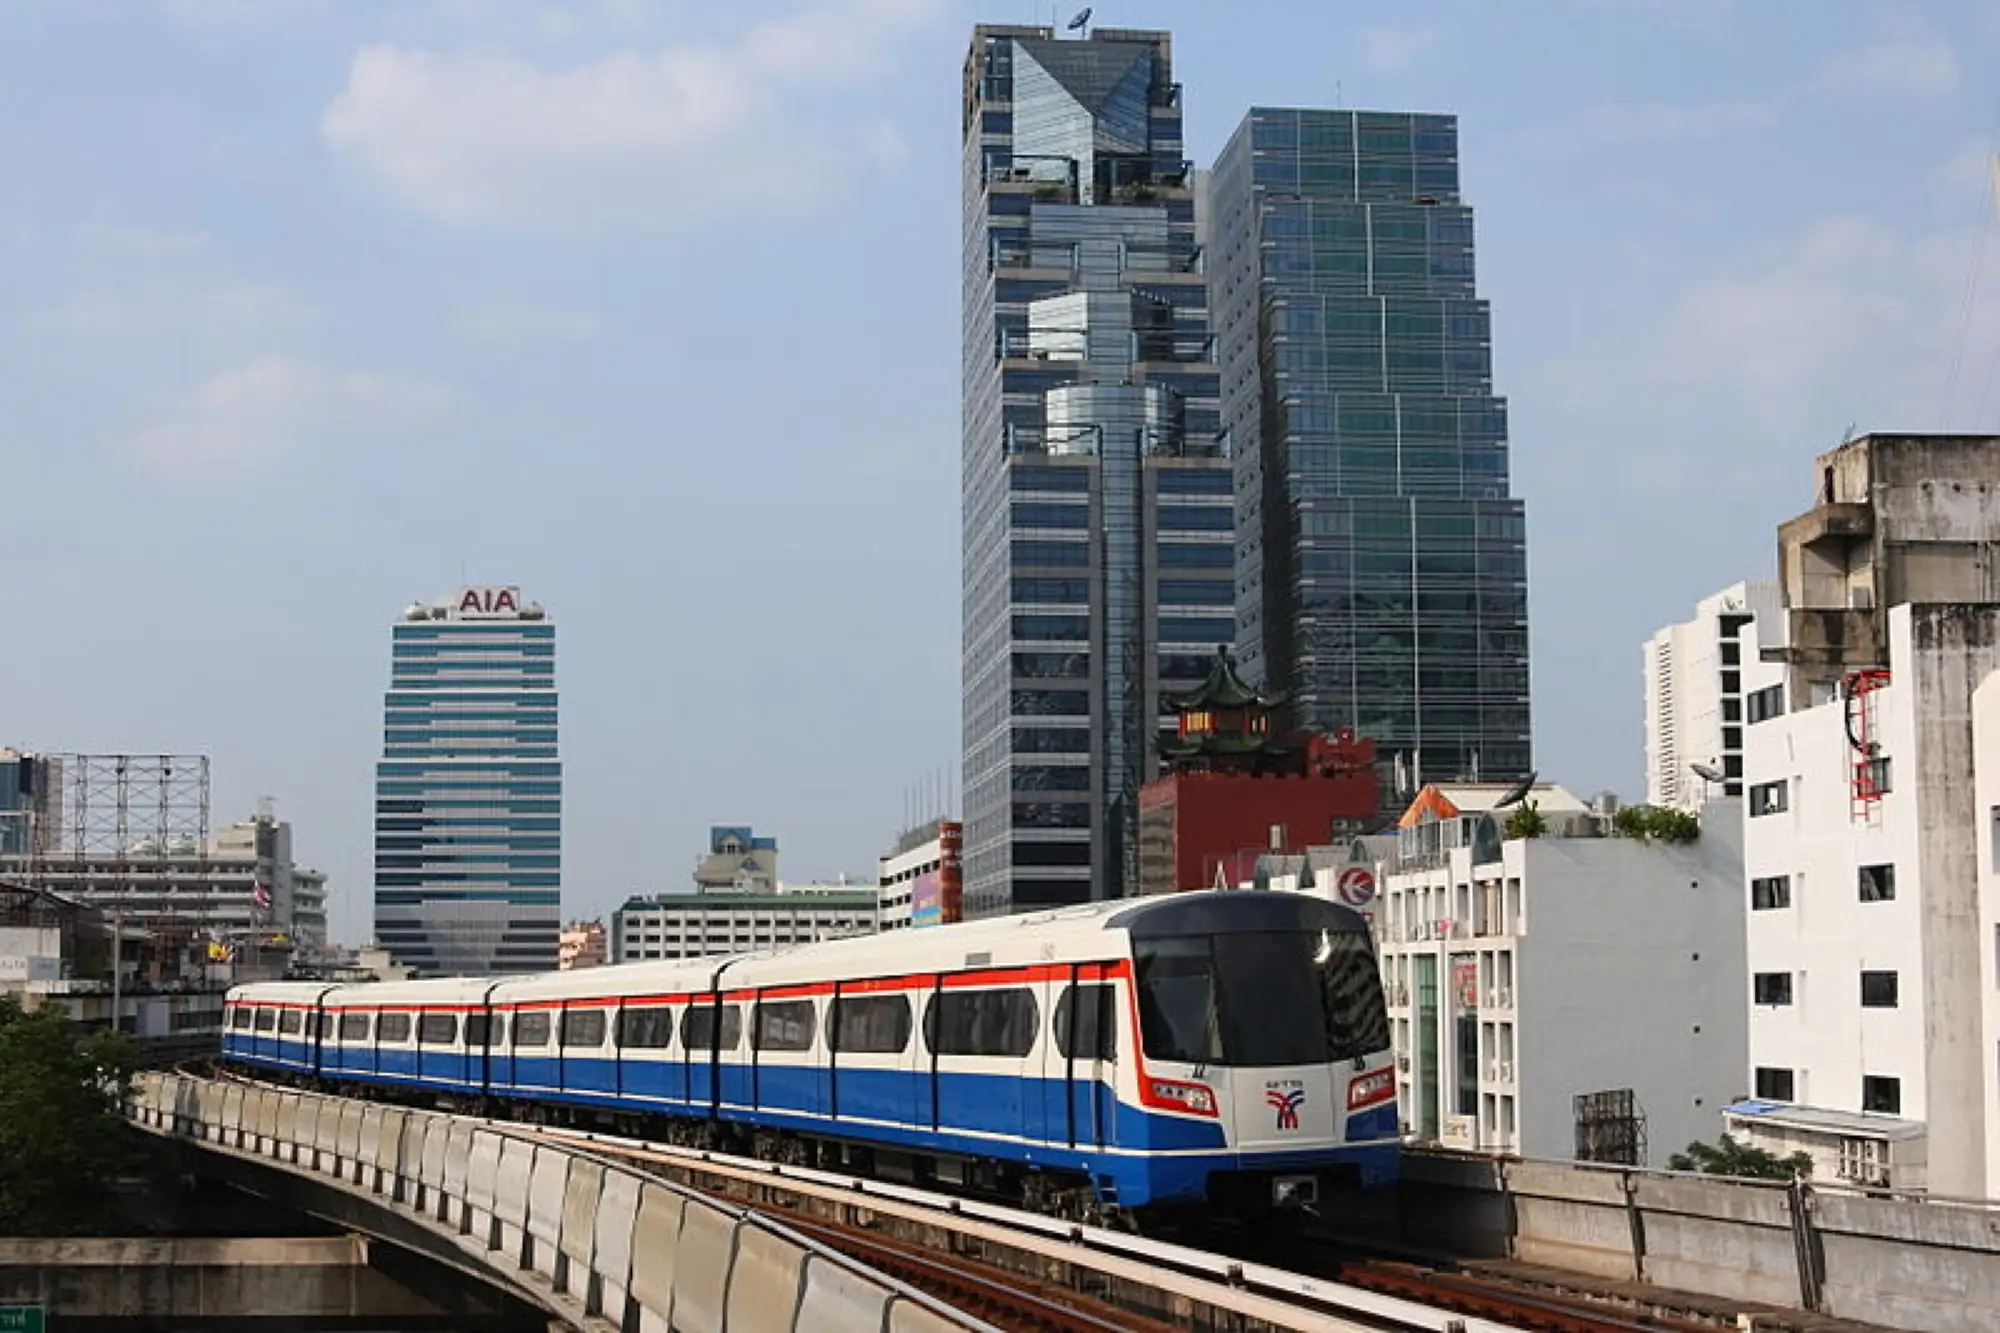 曼谷BTS鄭皇橋站(Saphan Taksin)計畫關站改建（圖片來自WIKI)